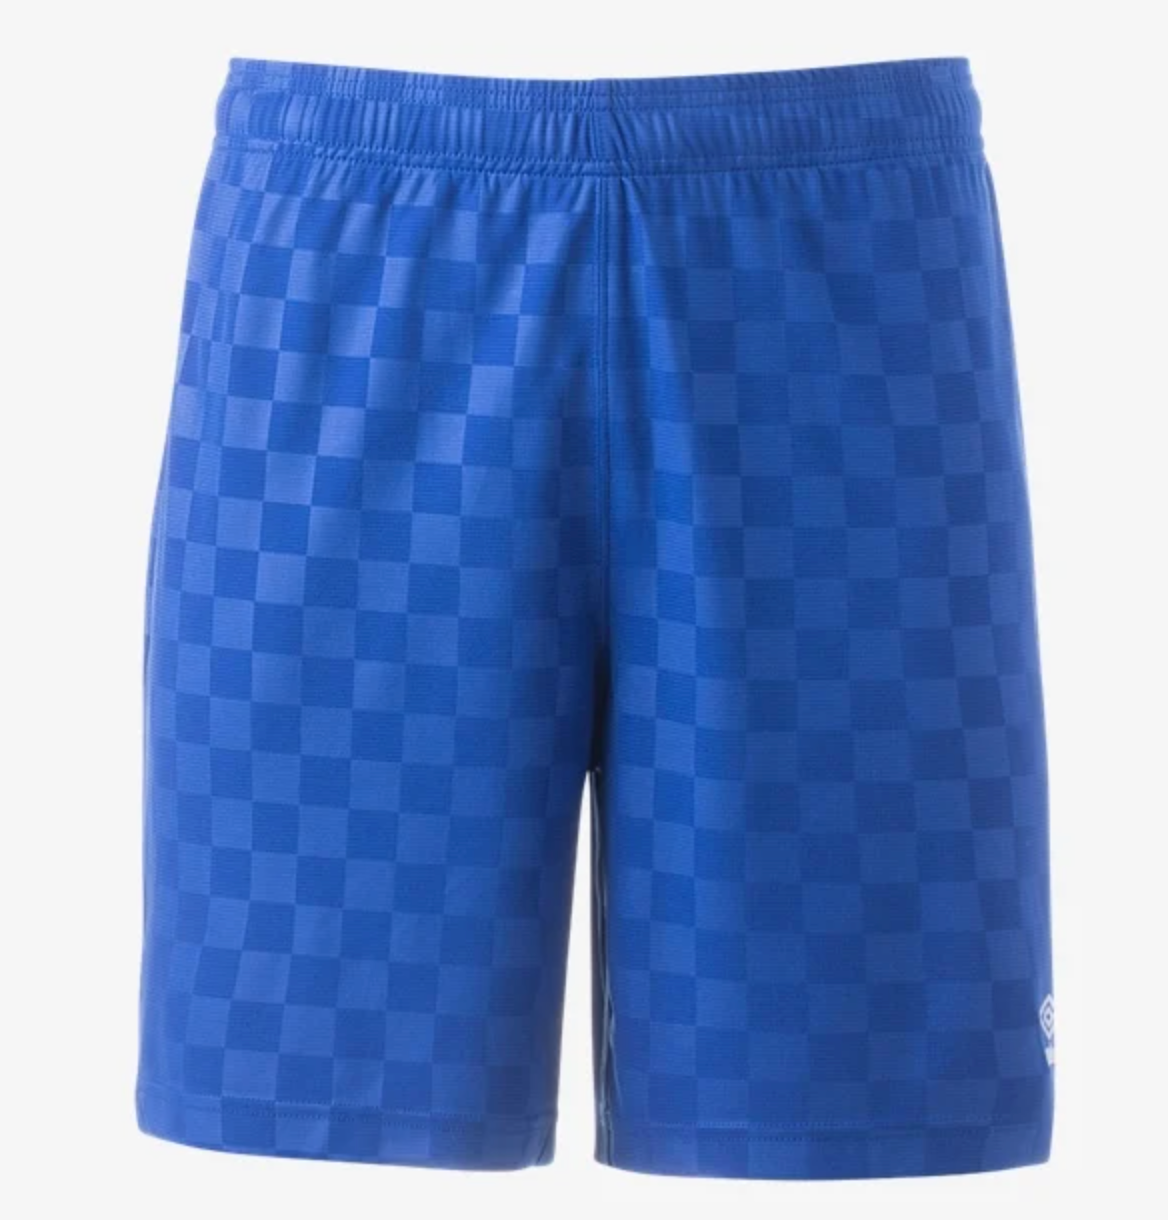 Umbro Checkered Shorts-Royal